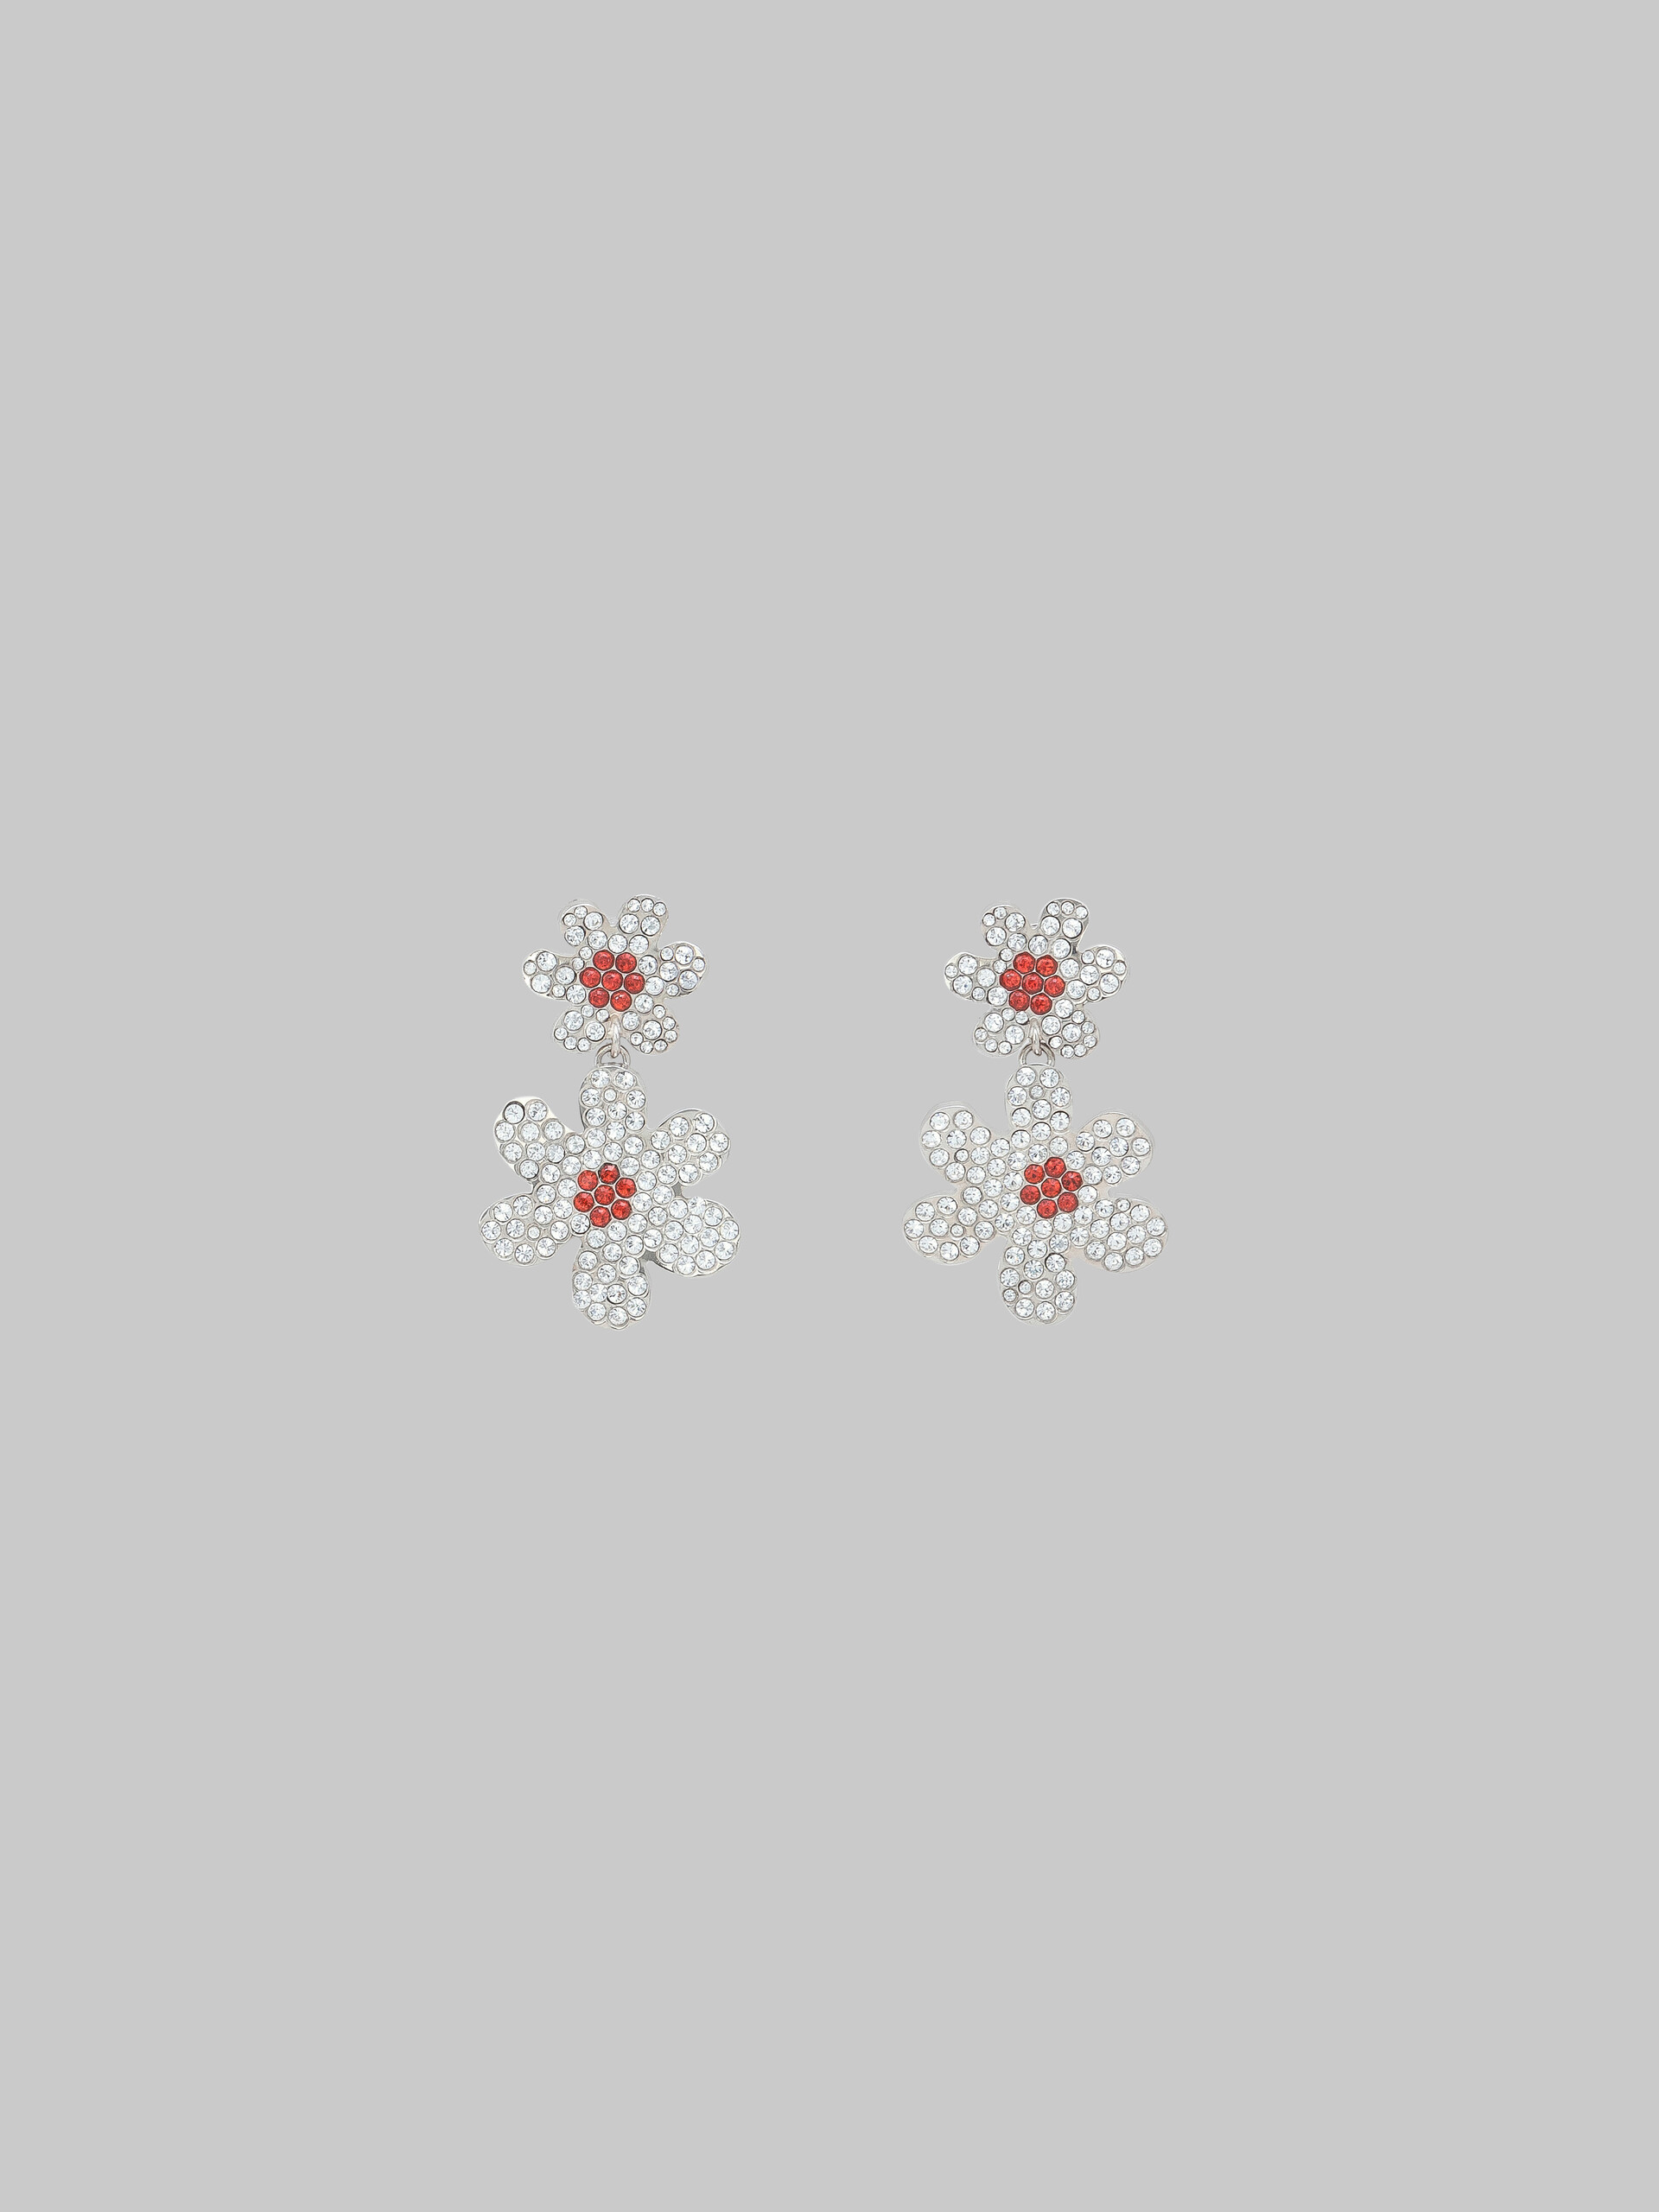 Daisy drop earrings with pavé rhinestones - Earrings - Image 1